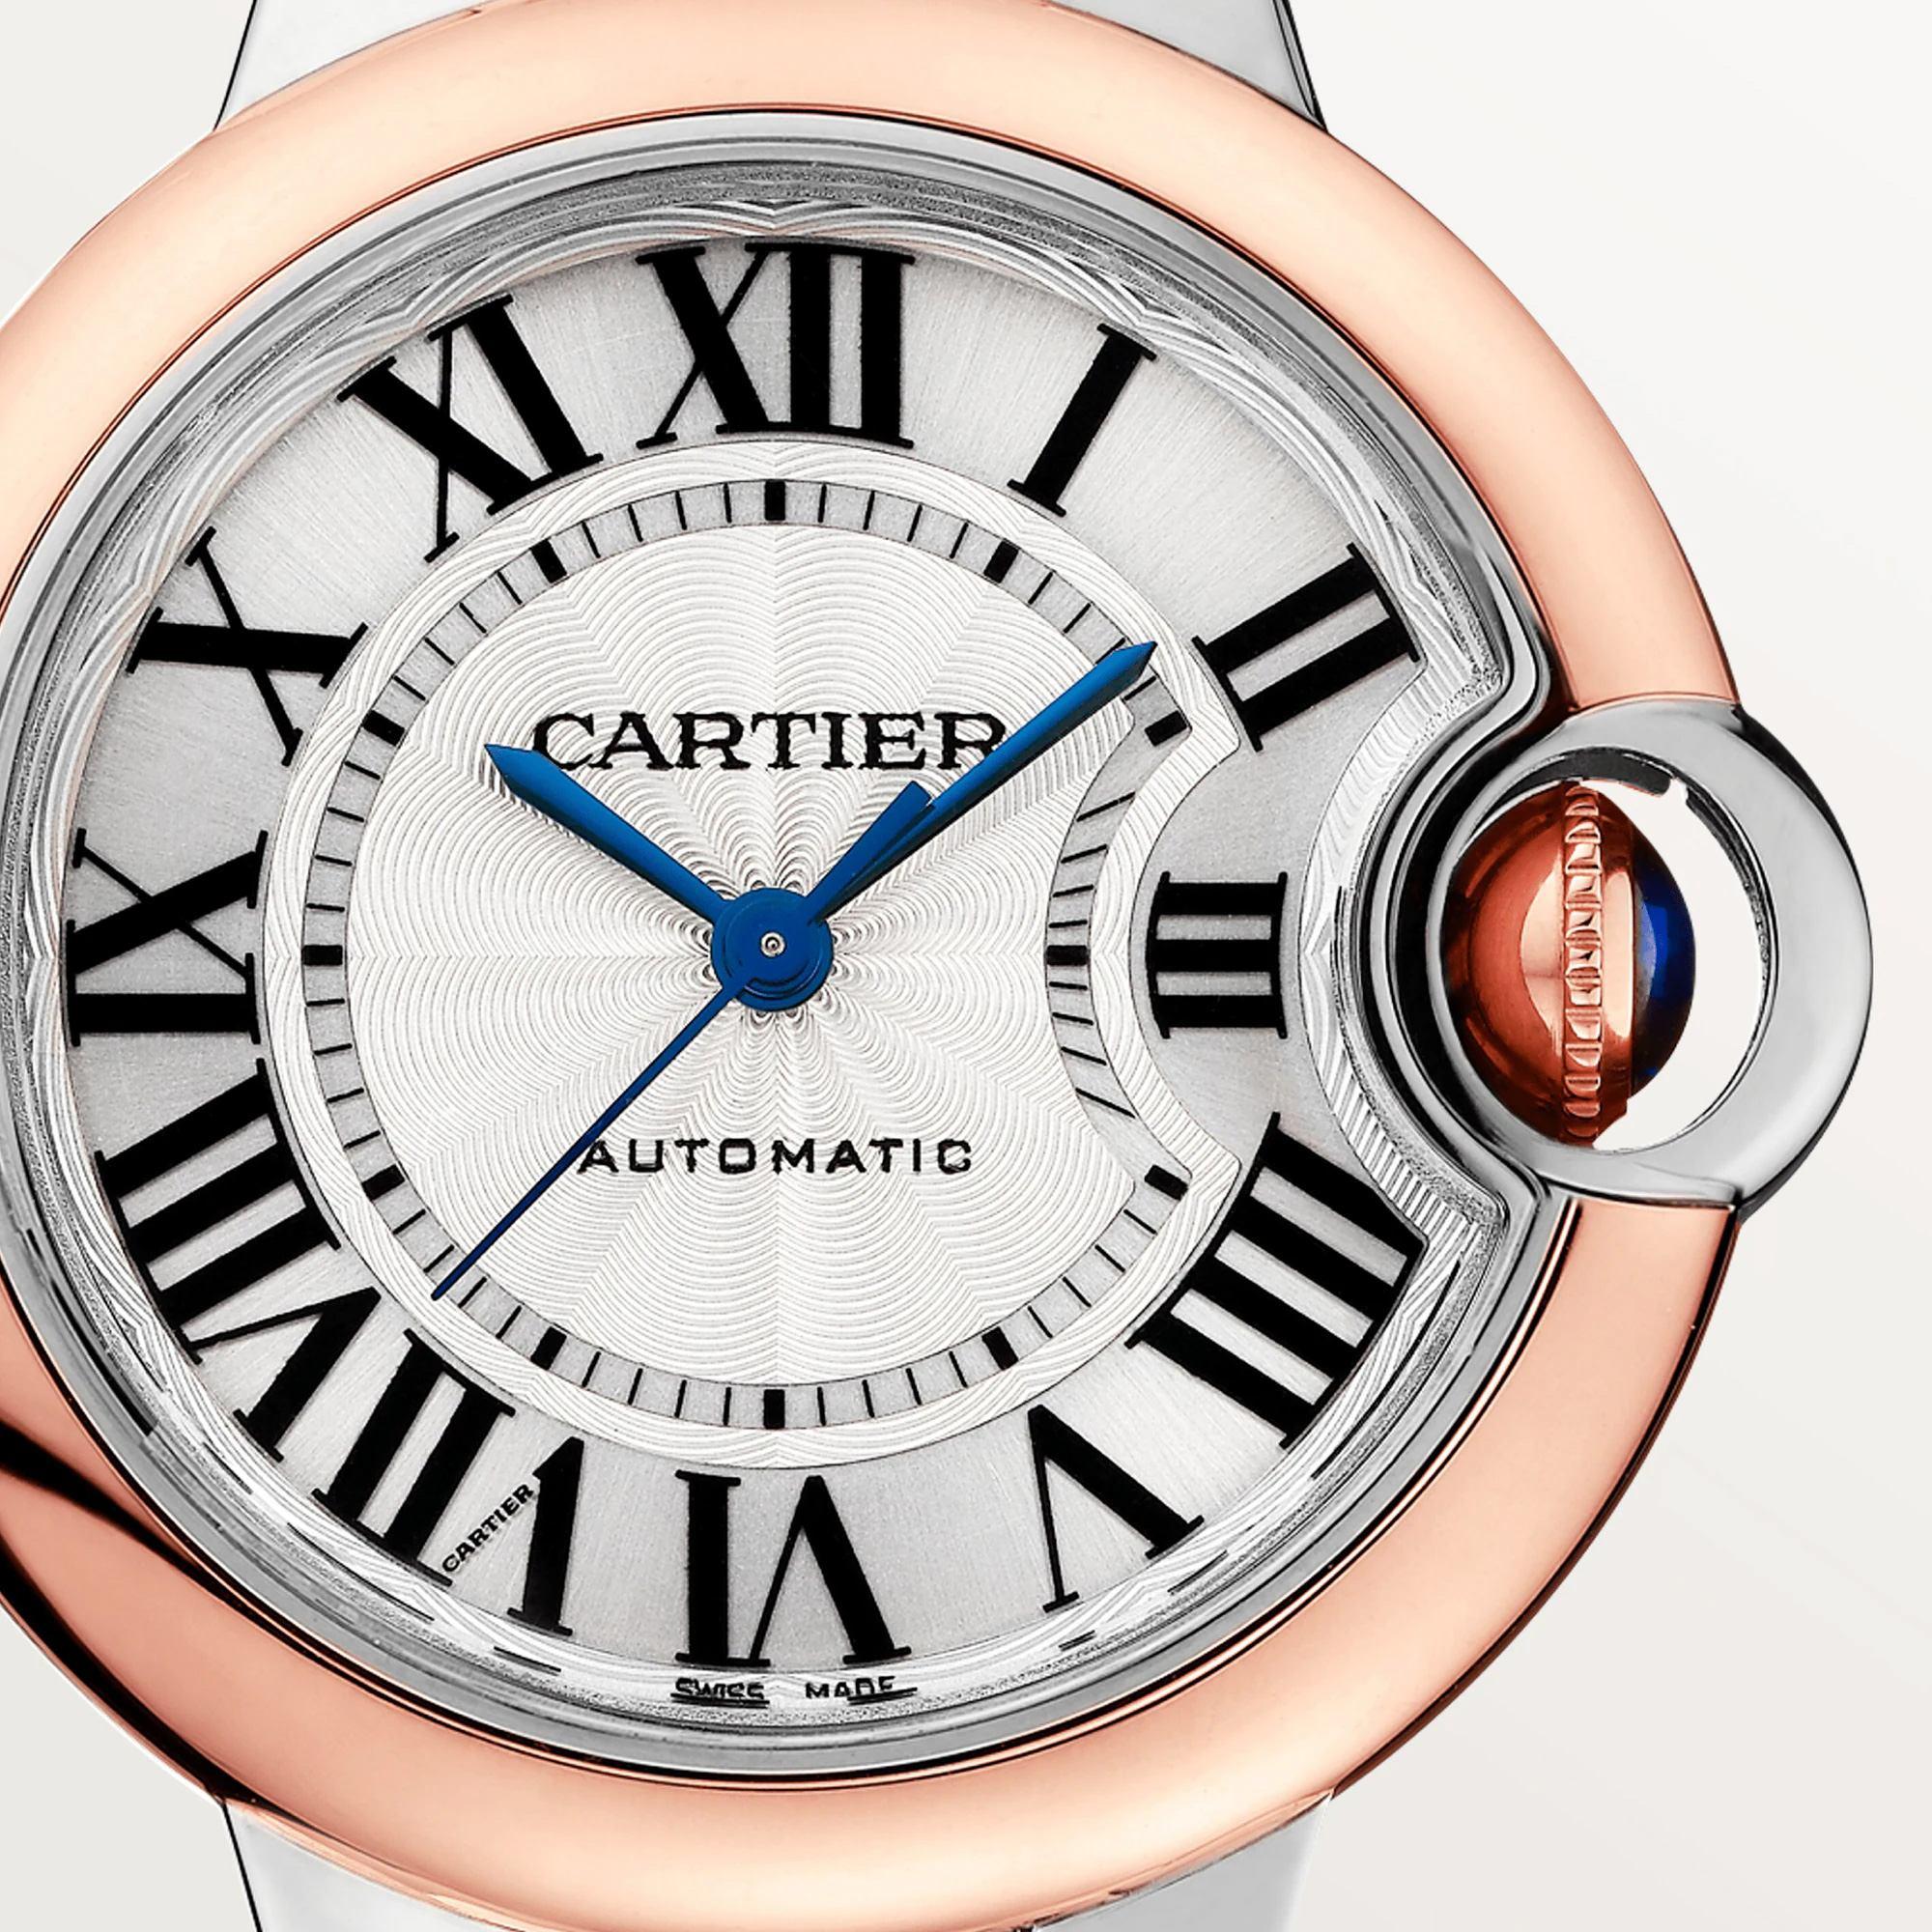 Ballon Bleu de Cartier Watch in Rose Gold, 33mm 1